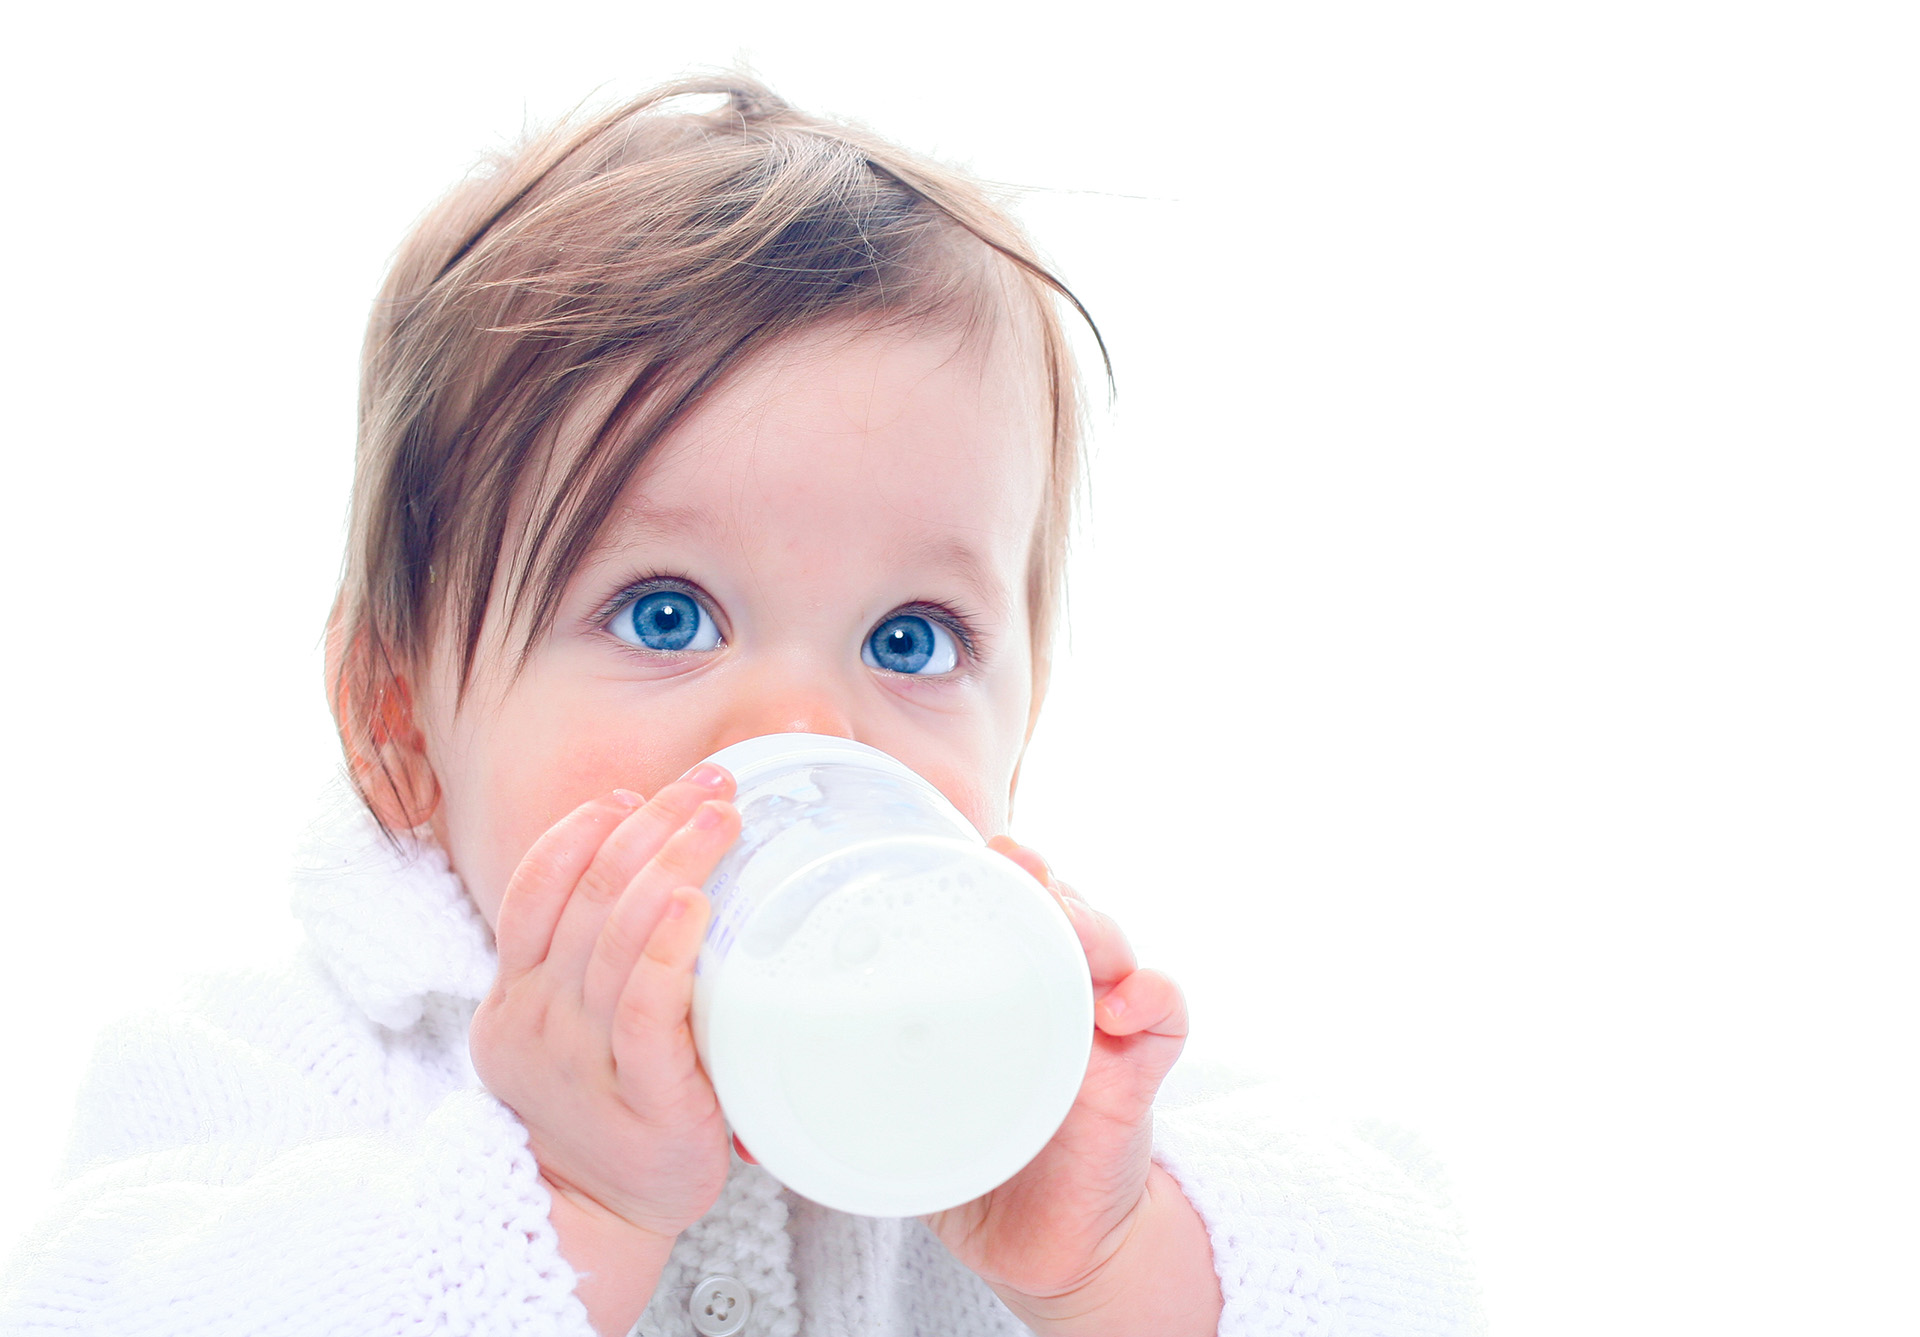 Salud infantil: reclaman a obras sociales y prepagas por incumplimiento en la cobertura de leches medicamentosas